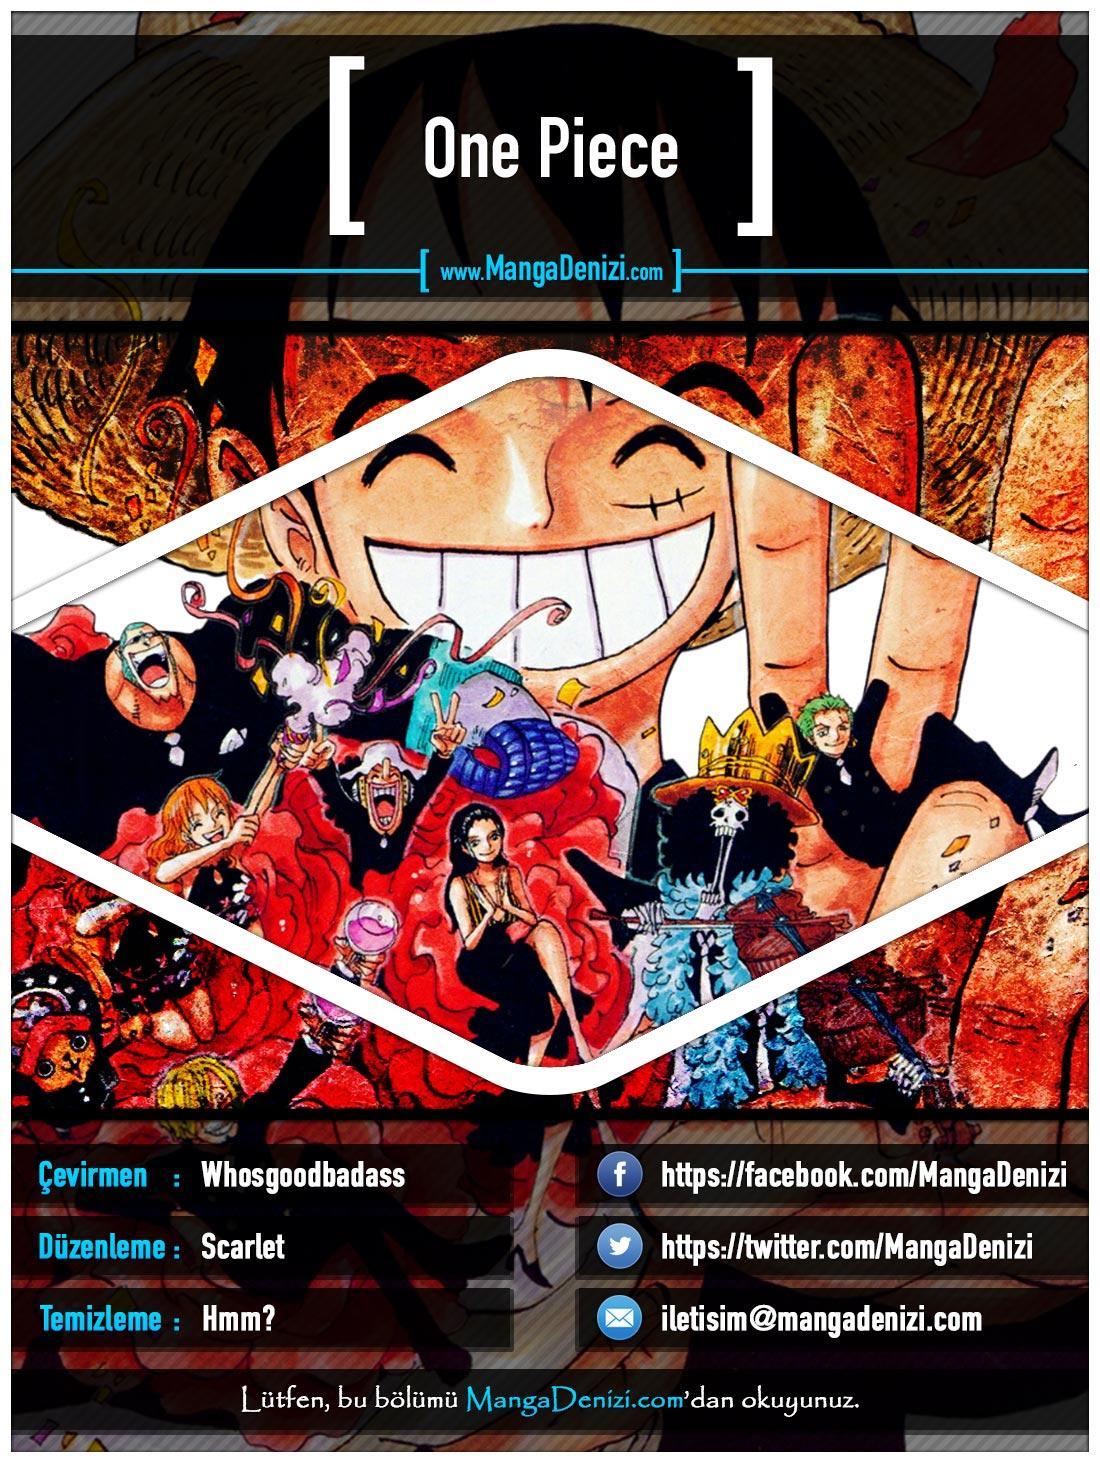 One Piece [Renkli] mangasının 0653 bölümünün 1. sayfasını okuyorsunuz.